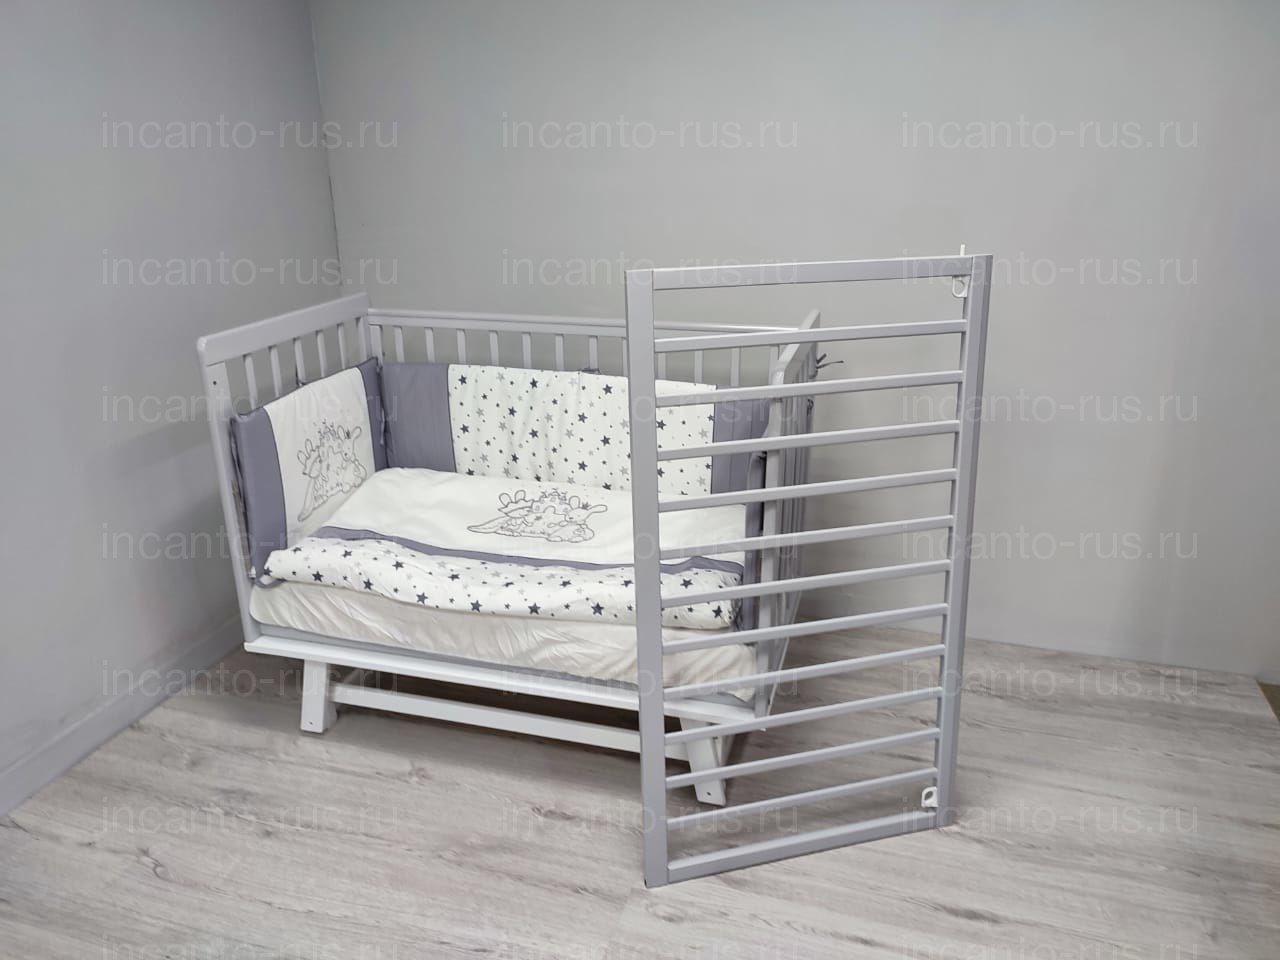 Кроватки для малышей, Кровать Incanto Anniken продольный маятник цвет серый/белый